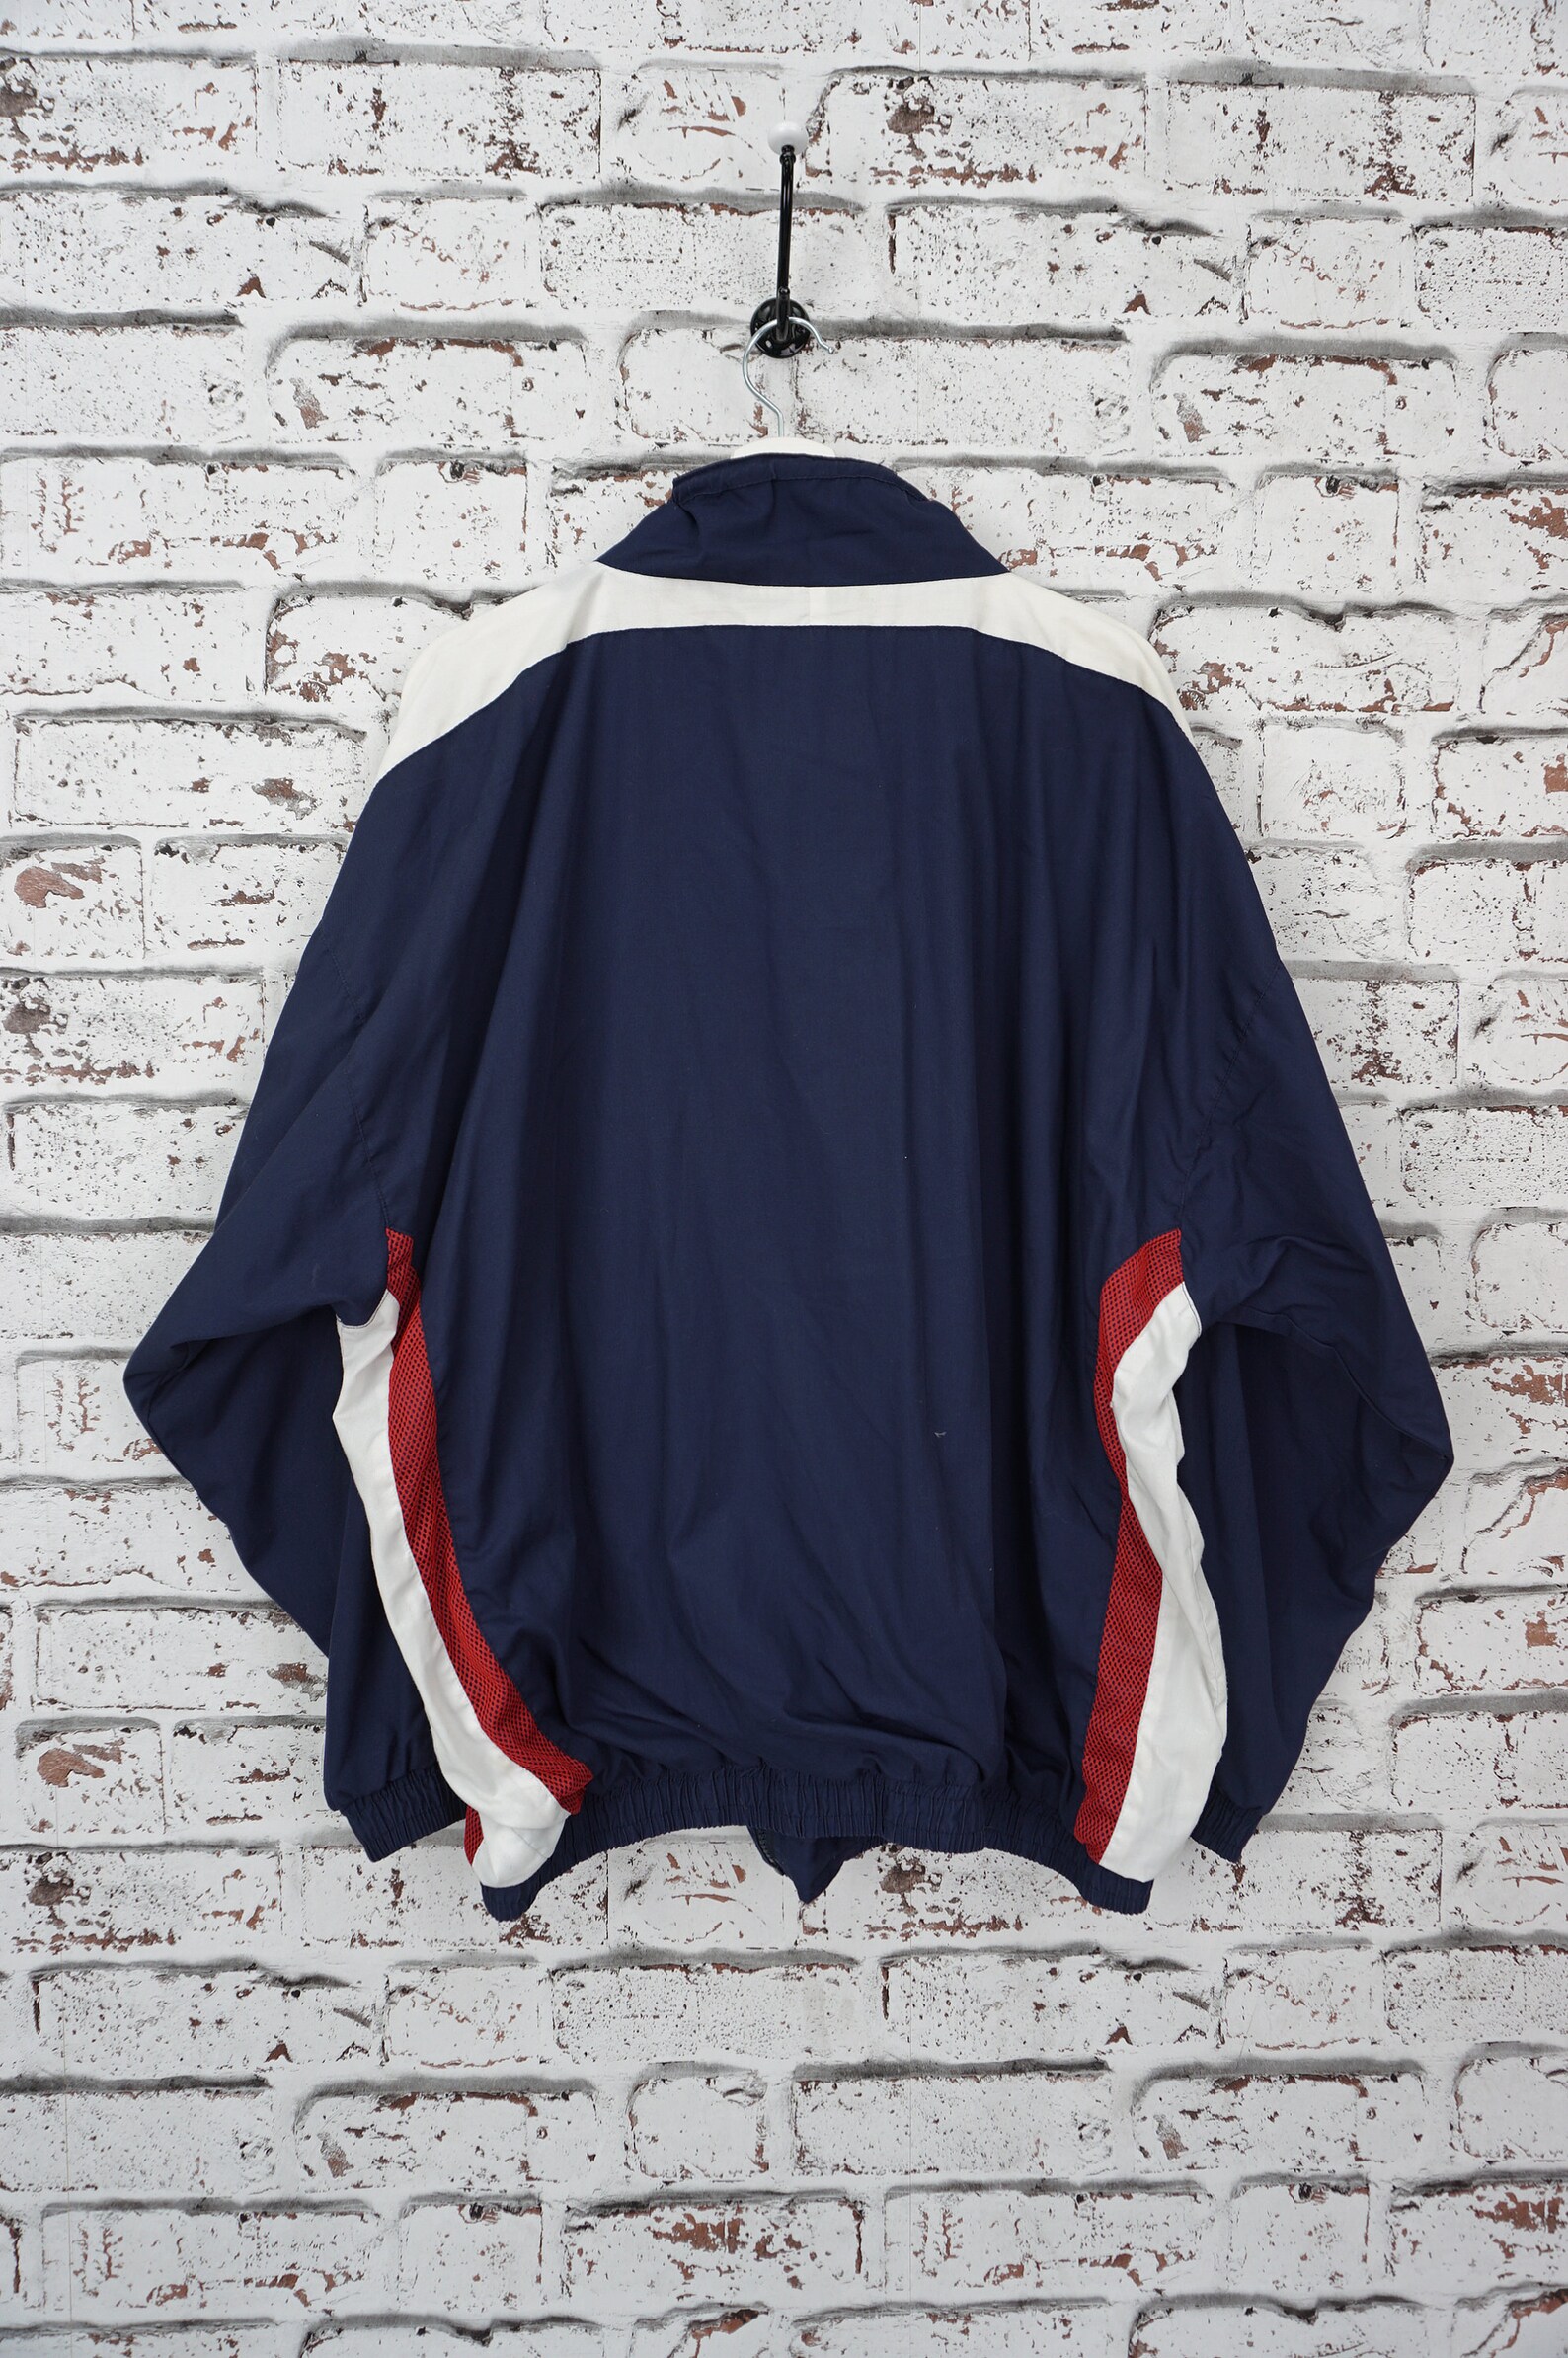 Vintage 90's retro 80's sport shell jacket shelljacket | Etsy